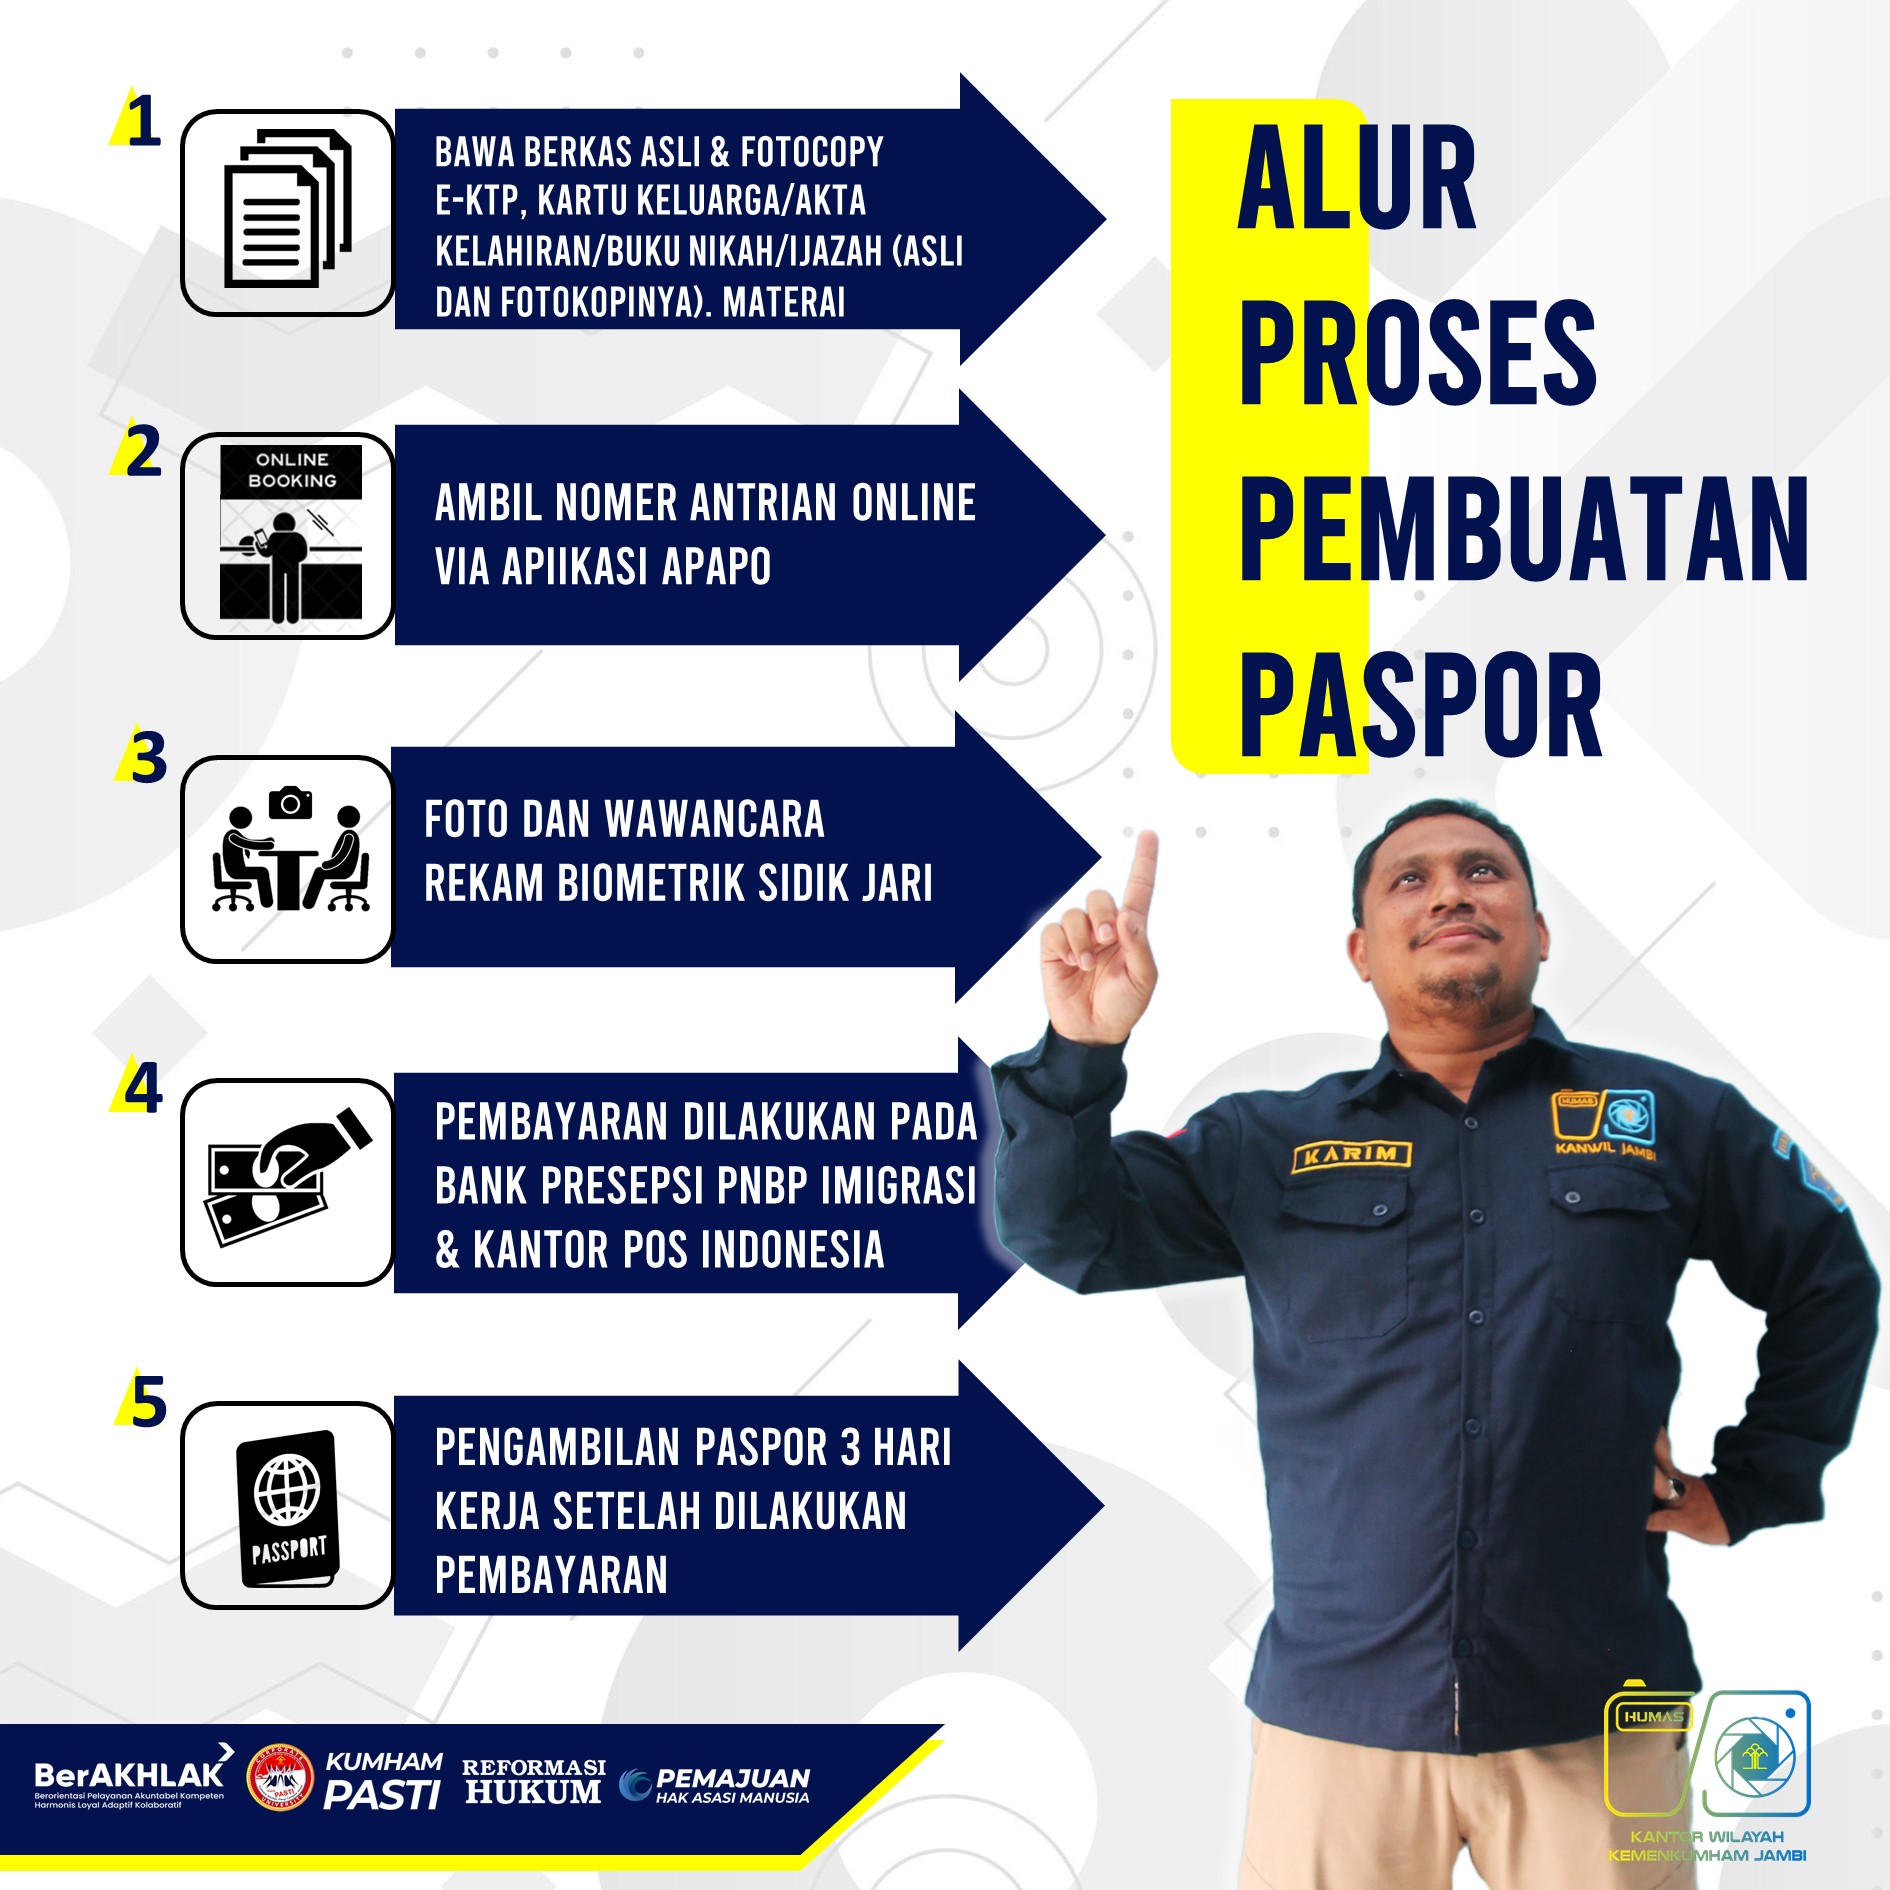 alur_pelayanan_pasport.jpg